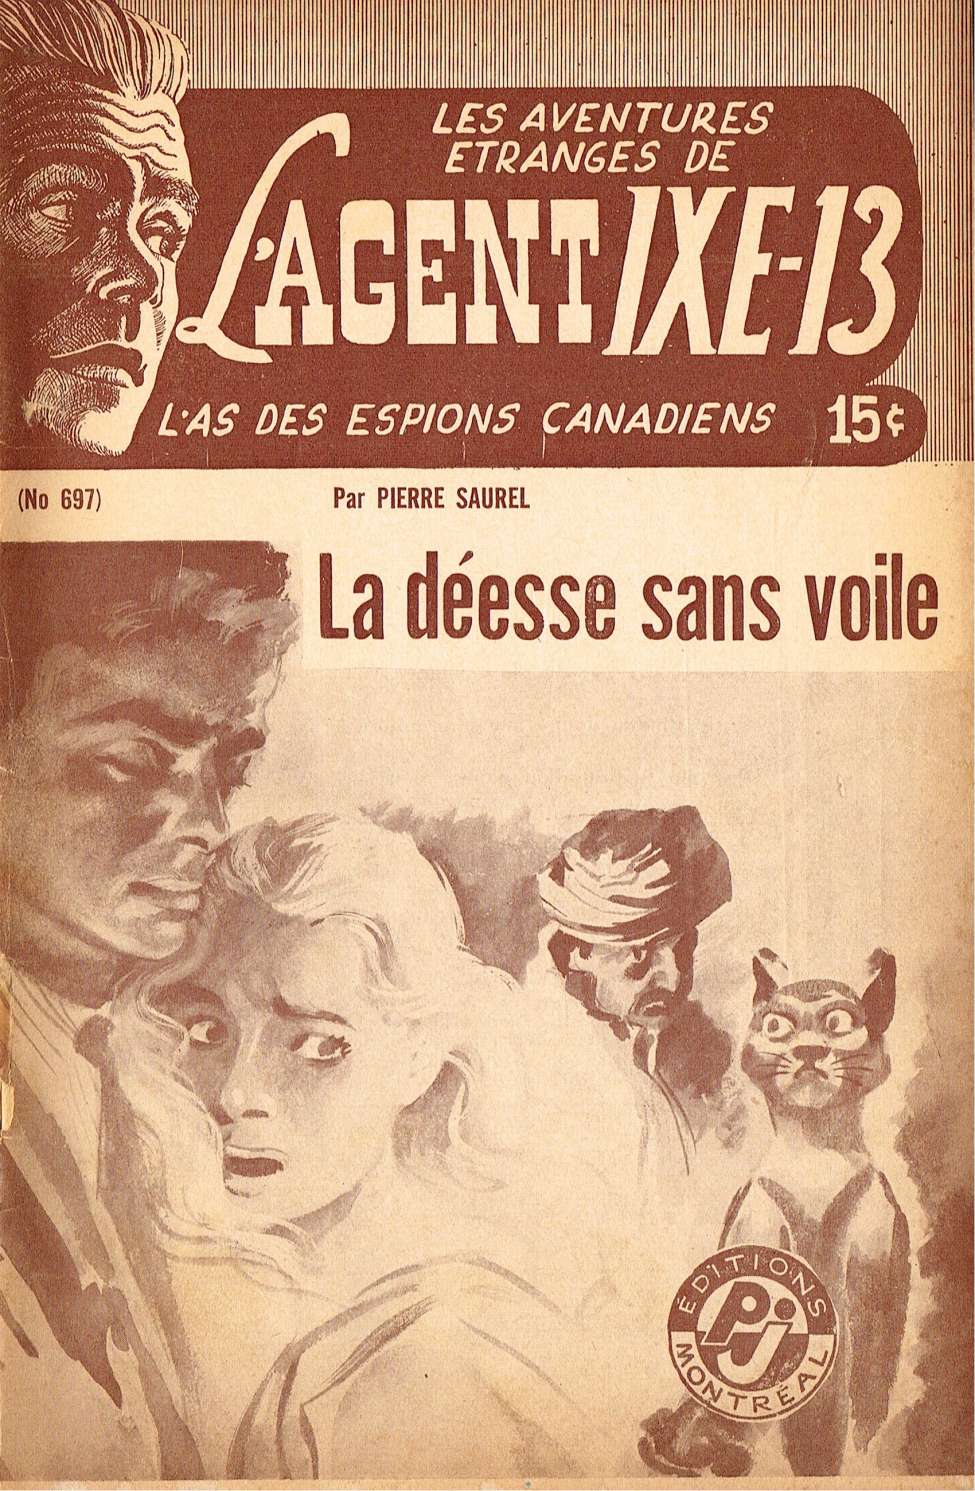 Book Cover For L'Agent IXE-13 v2 697 - La déesse sans voile